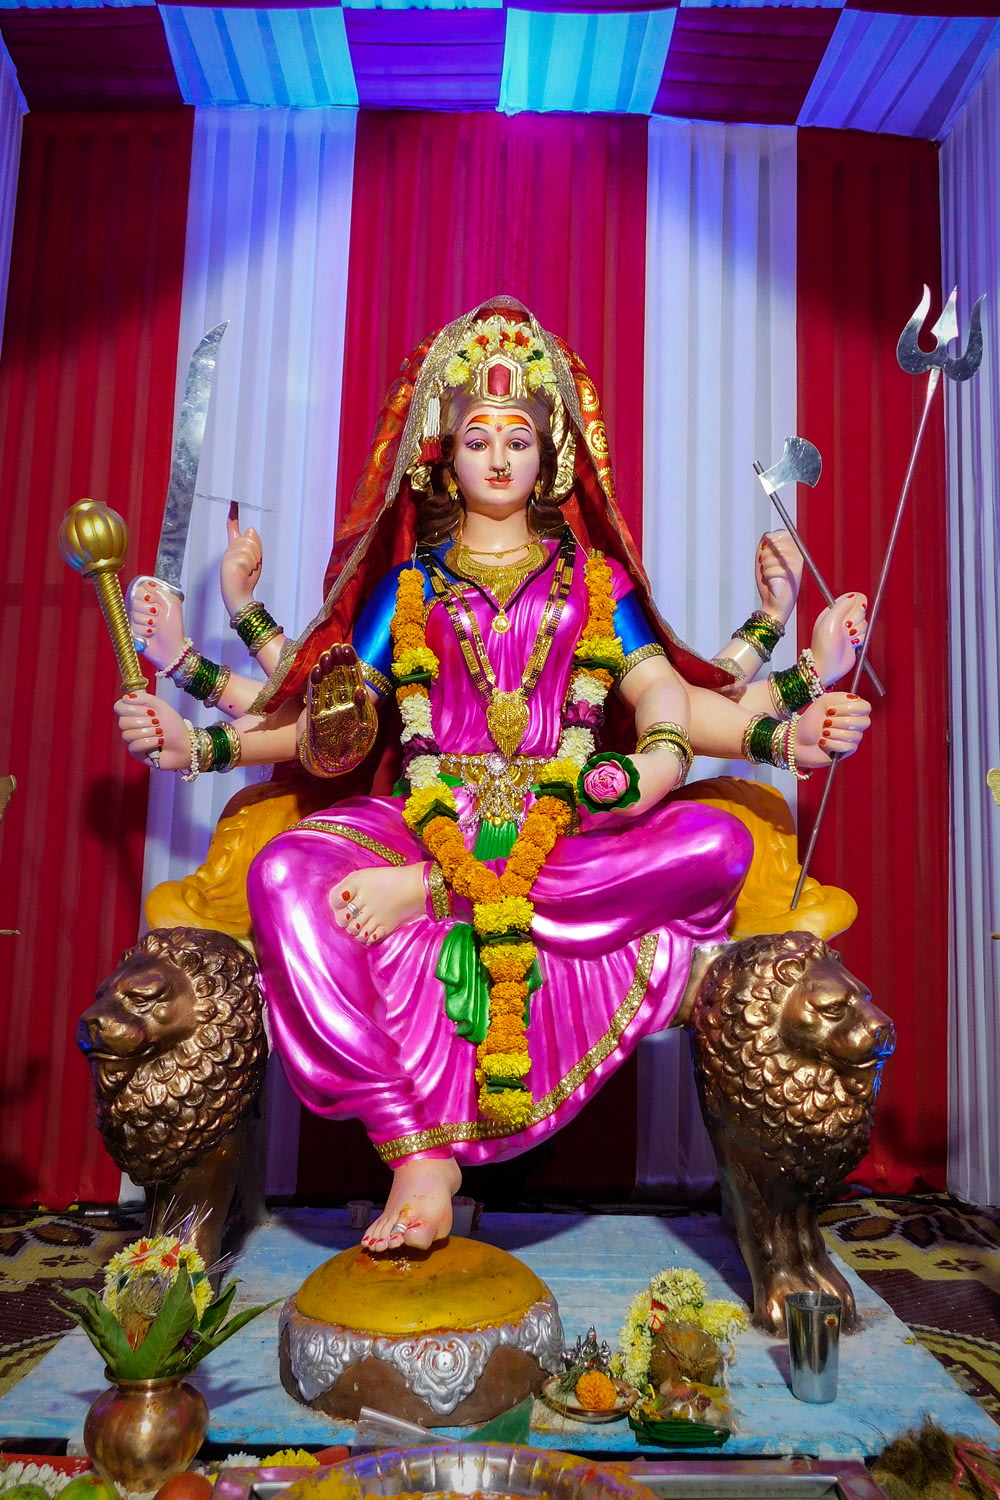 Une statue d’un dieu hindou assis sur un trône